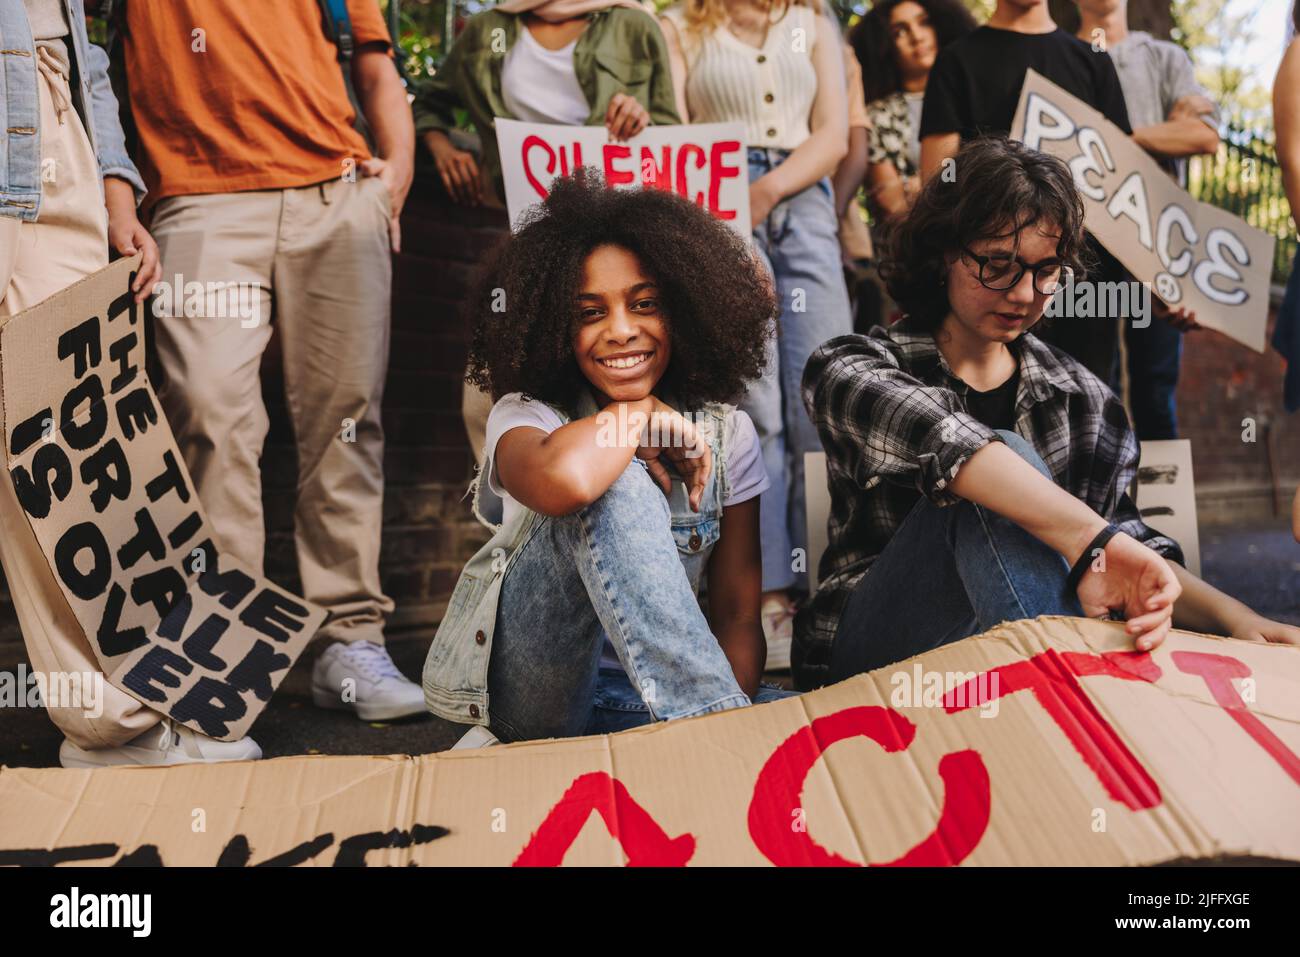 Bonne adolescente souriant à la caméra tout en étant assise avec un groupe de jeunes militants pour la paix. Jeunes multiethniques affichant des affiches et des bannières Banque D'Images